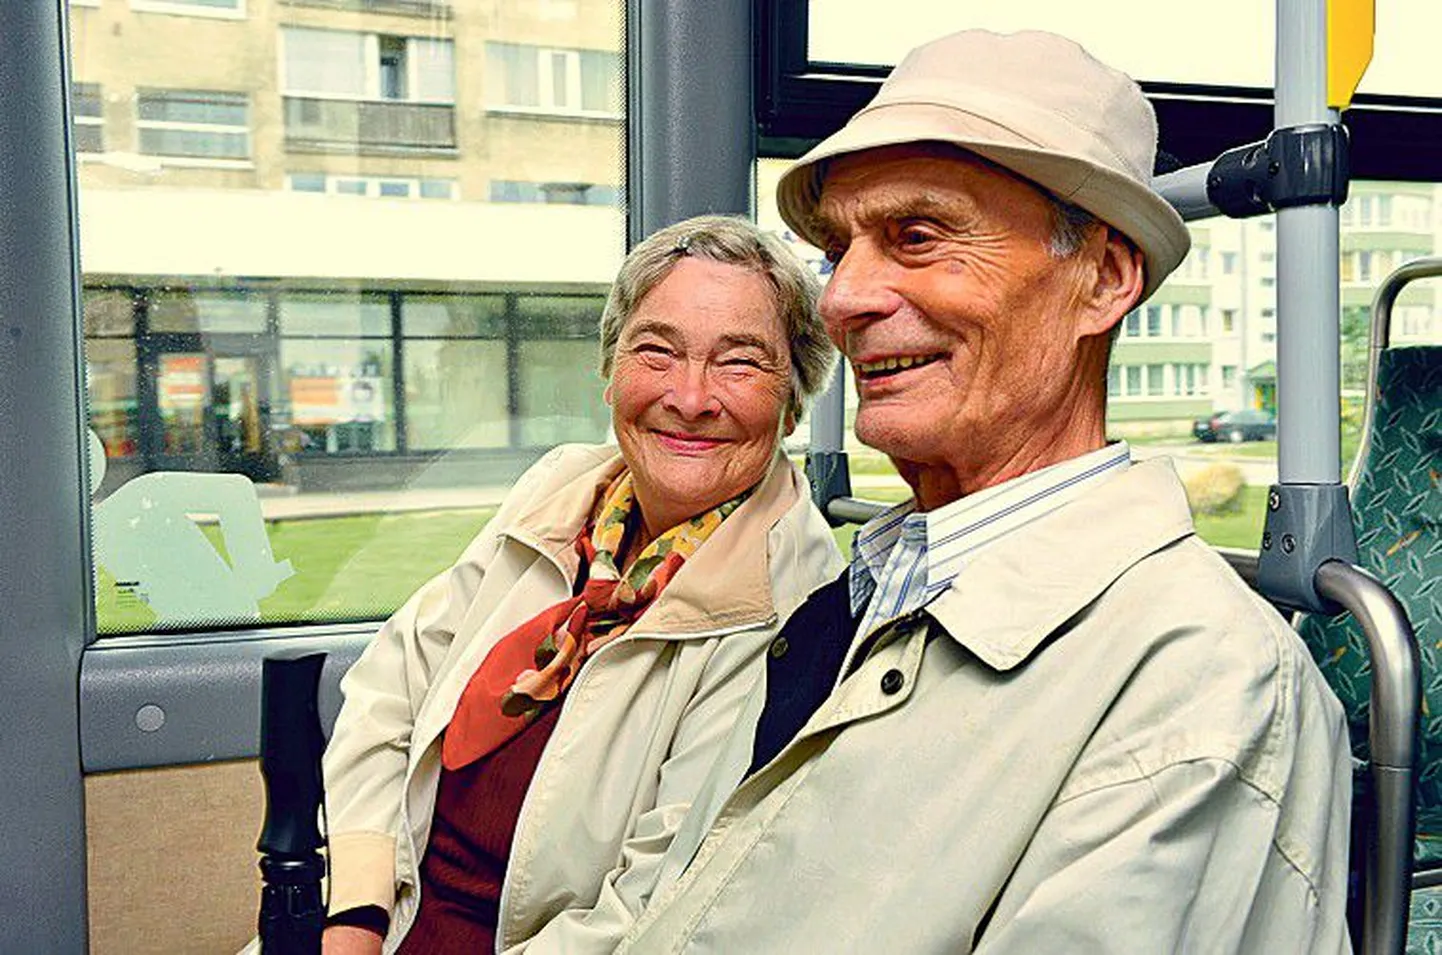 Пенсионеры Ээви и Хейнц не удивились, когда увидели в автобусе девушку в светло-зеленой жилетке, так как знали, что в столице приступают к работе кондукторы.